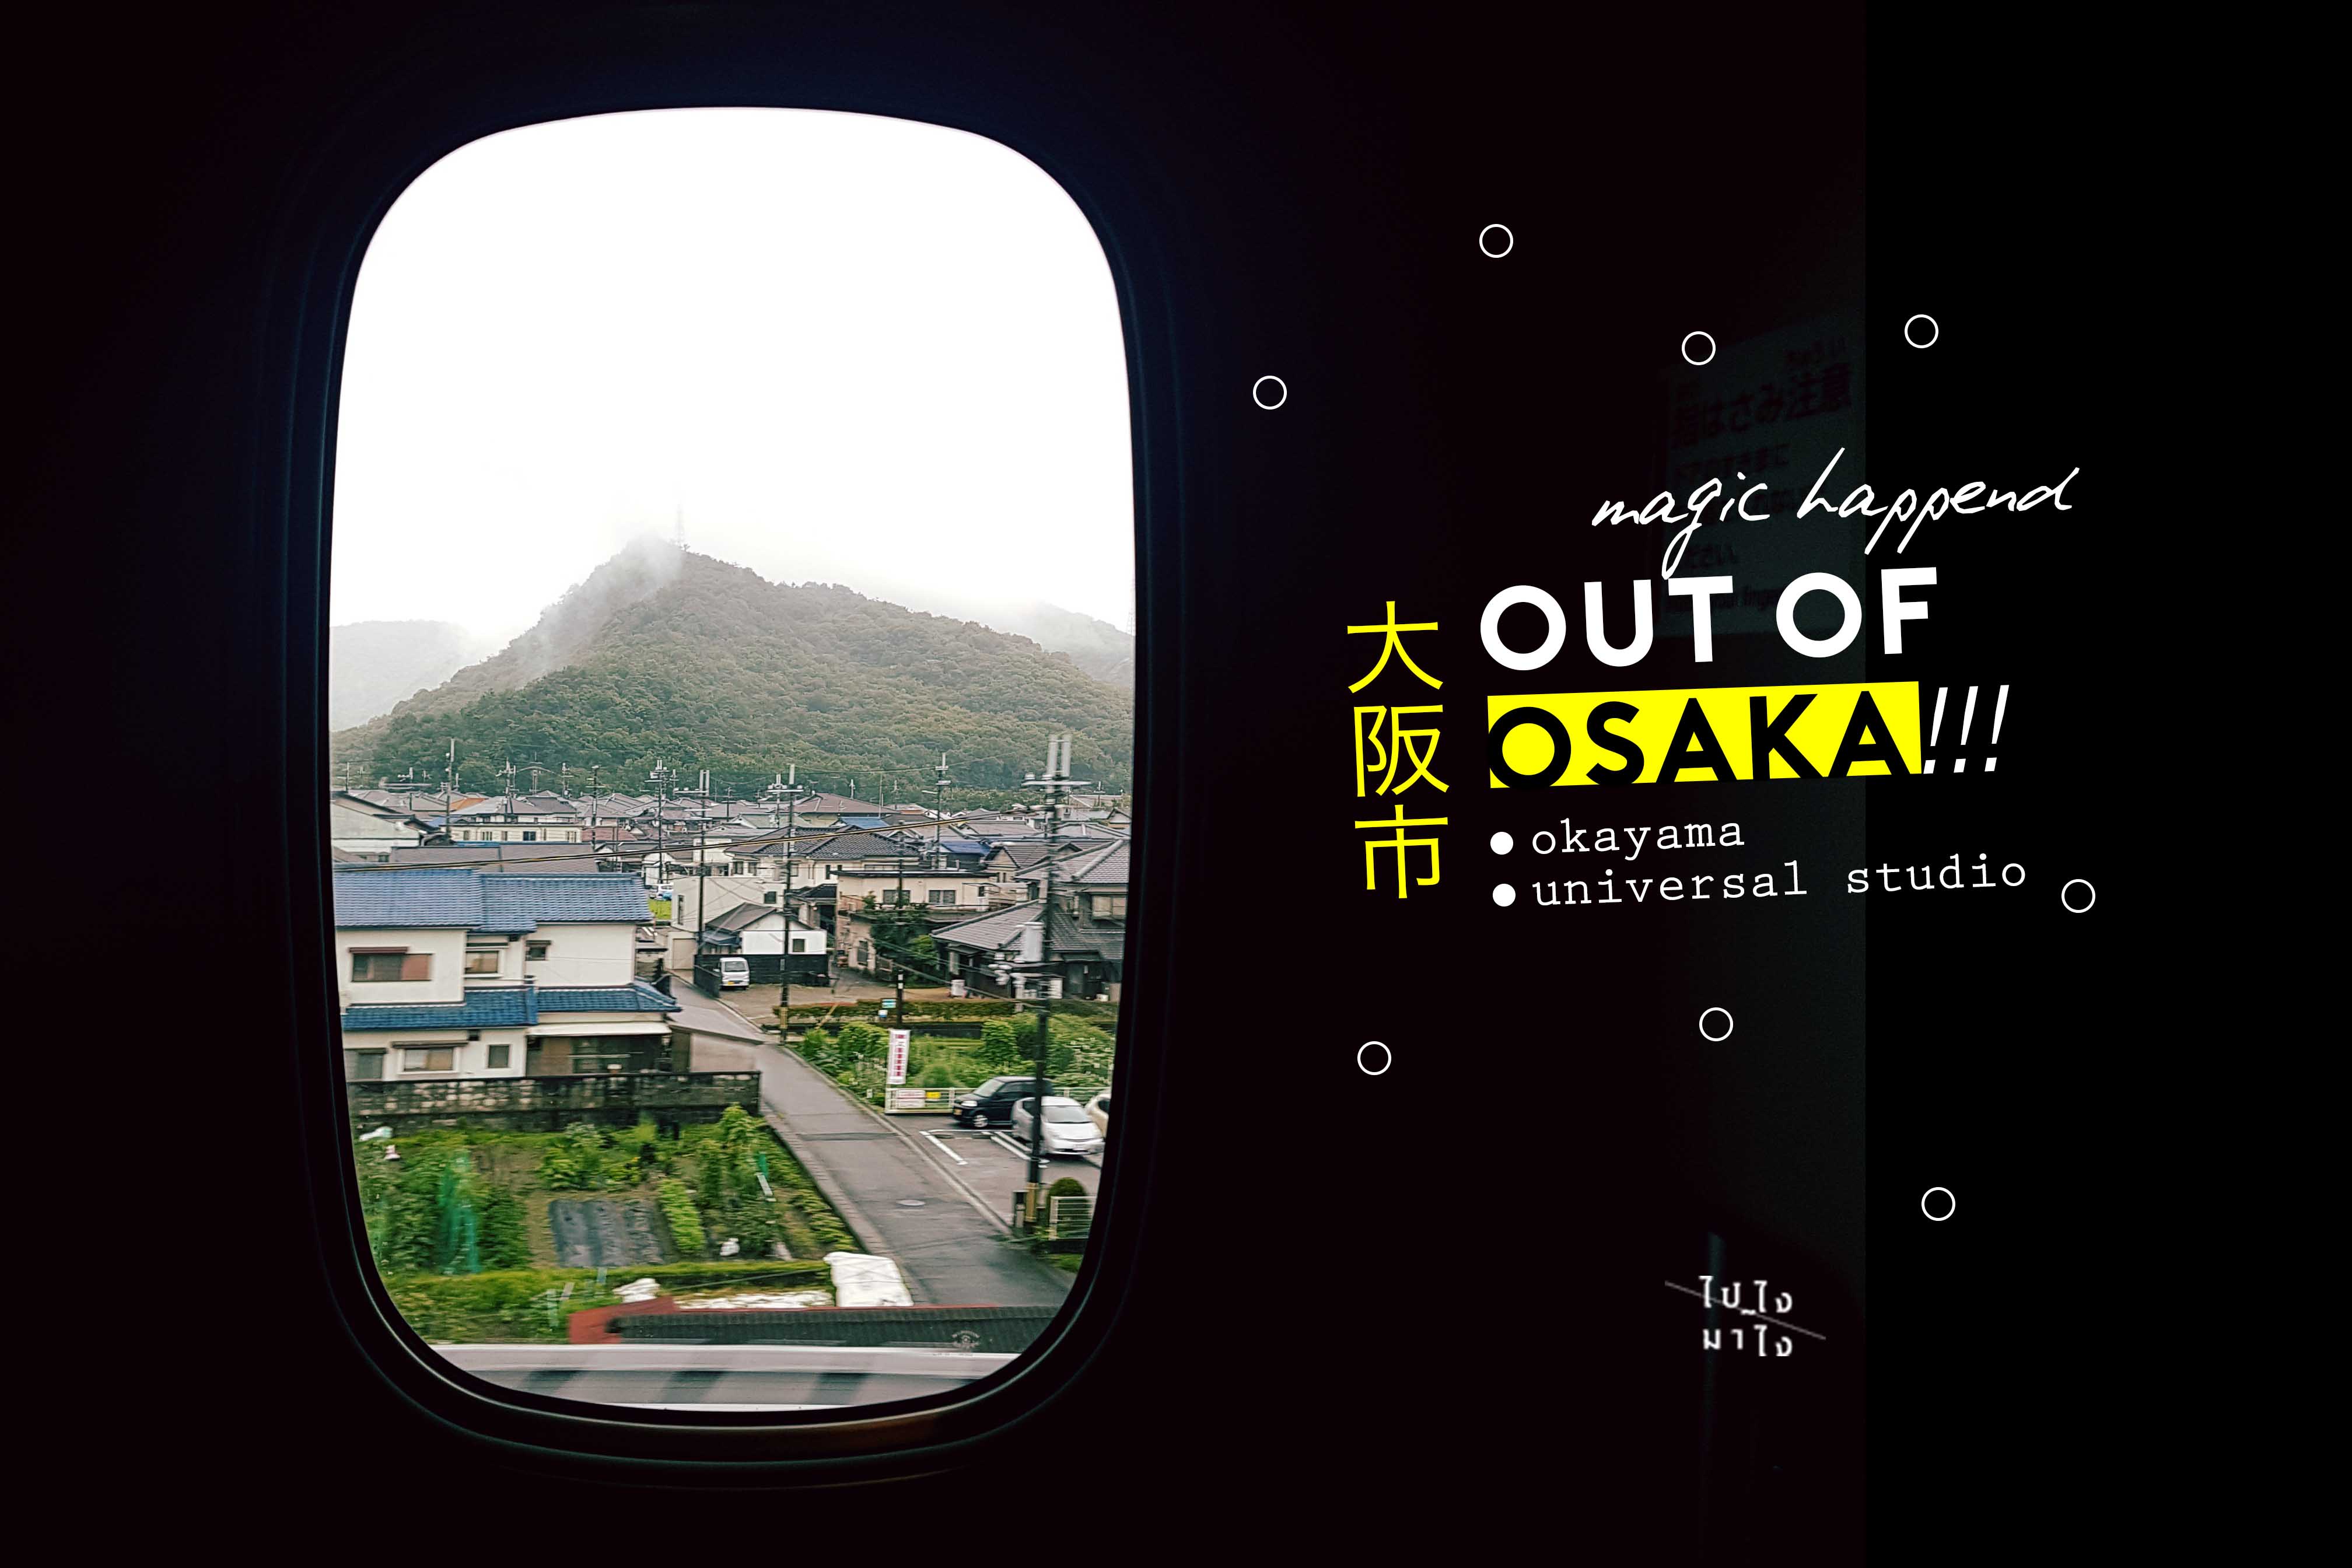 Out of Osaka!